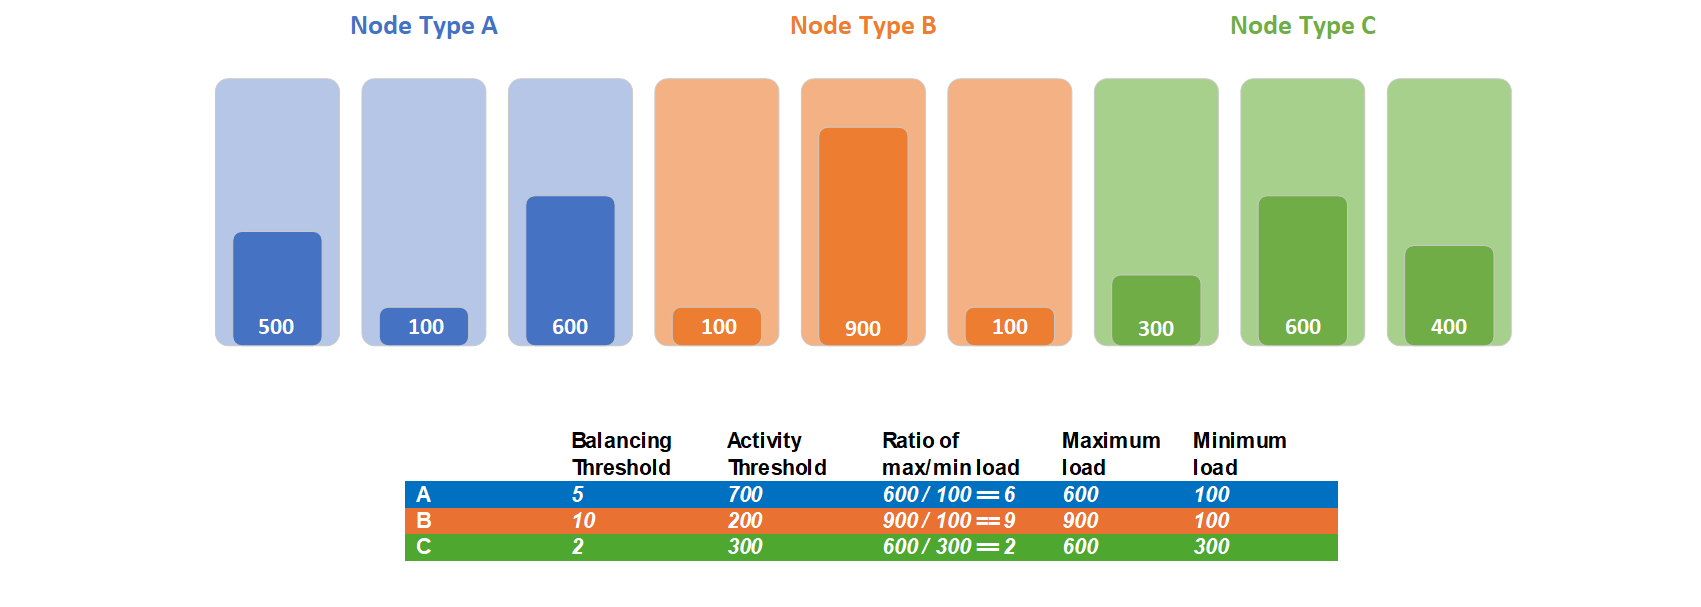 3 つのノード タイプがある場合のノード タイプの分散しきい値の例を示す図。